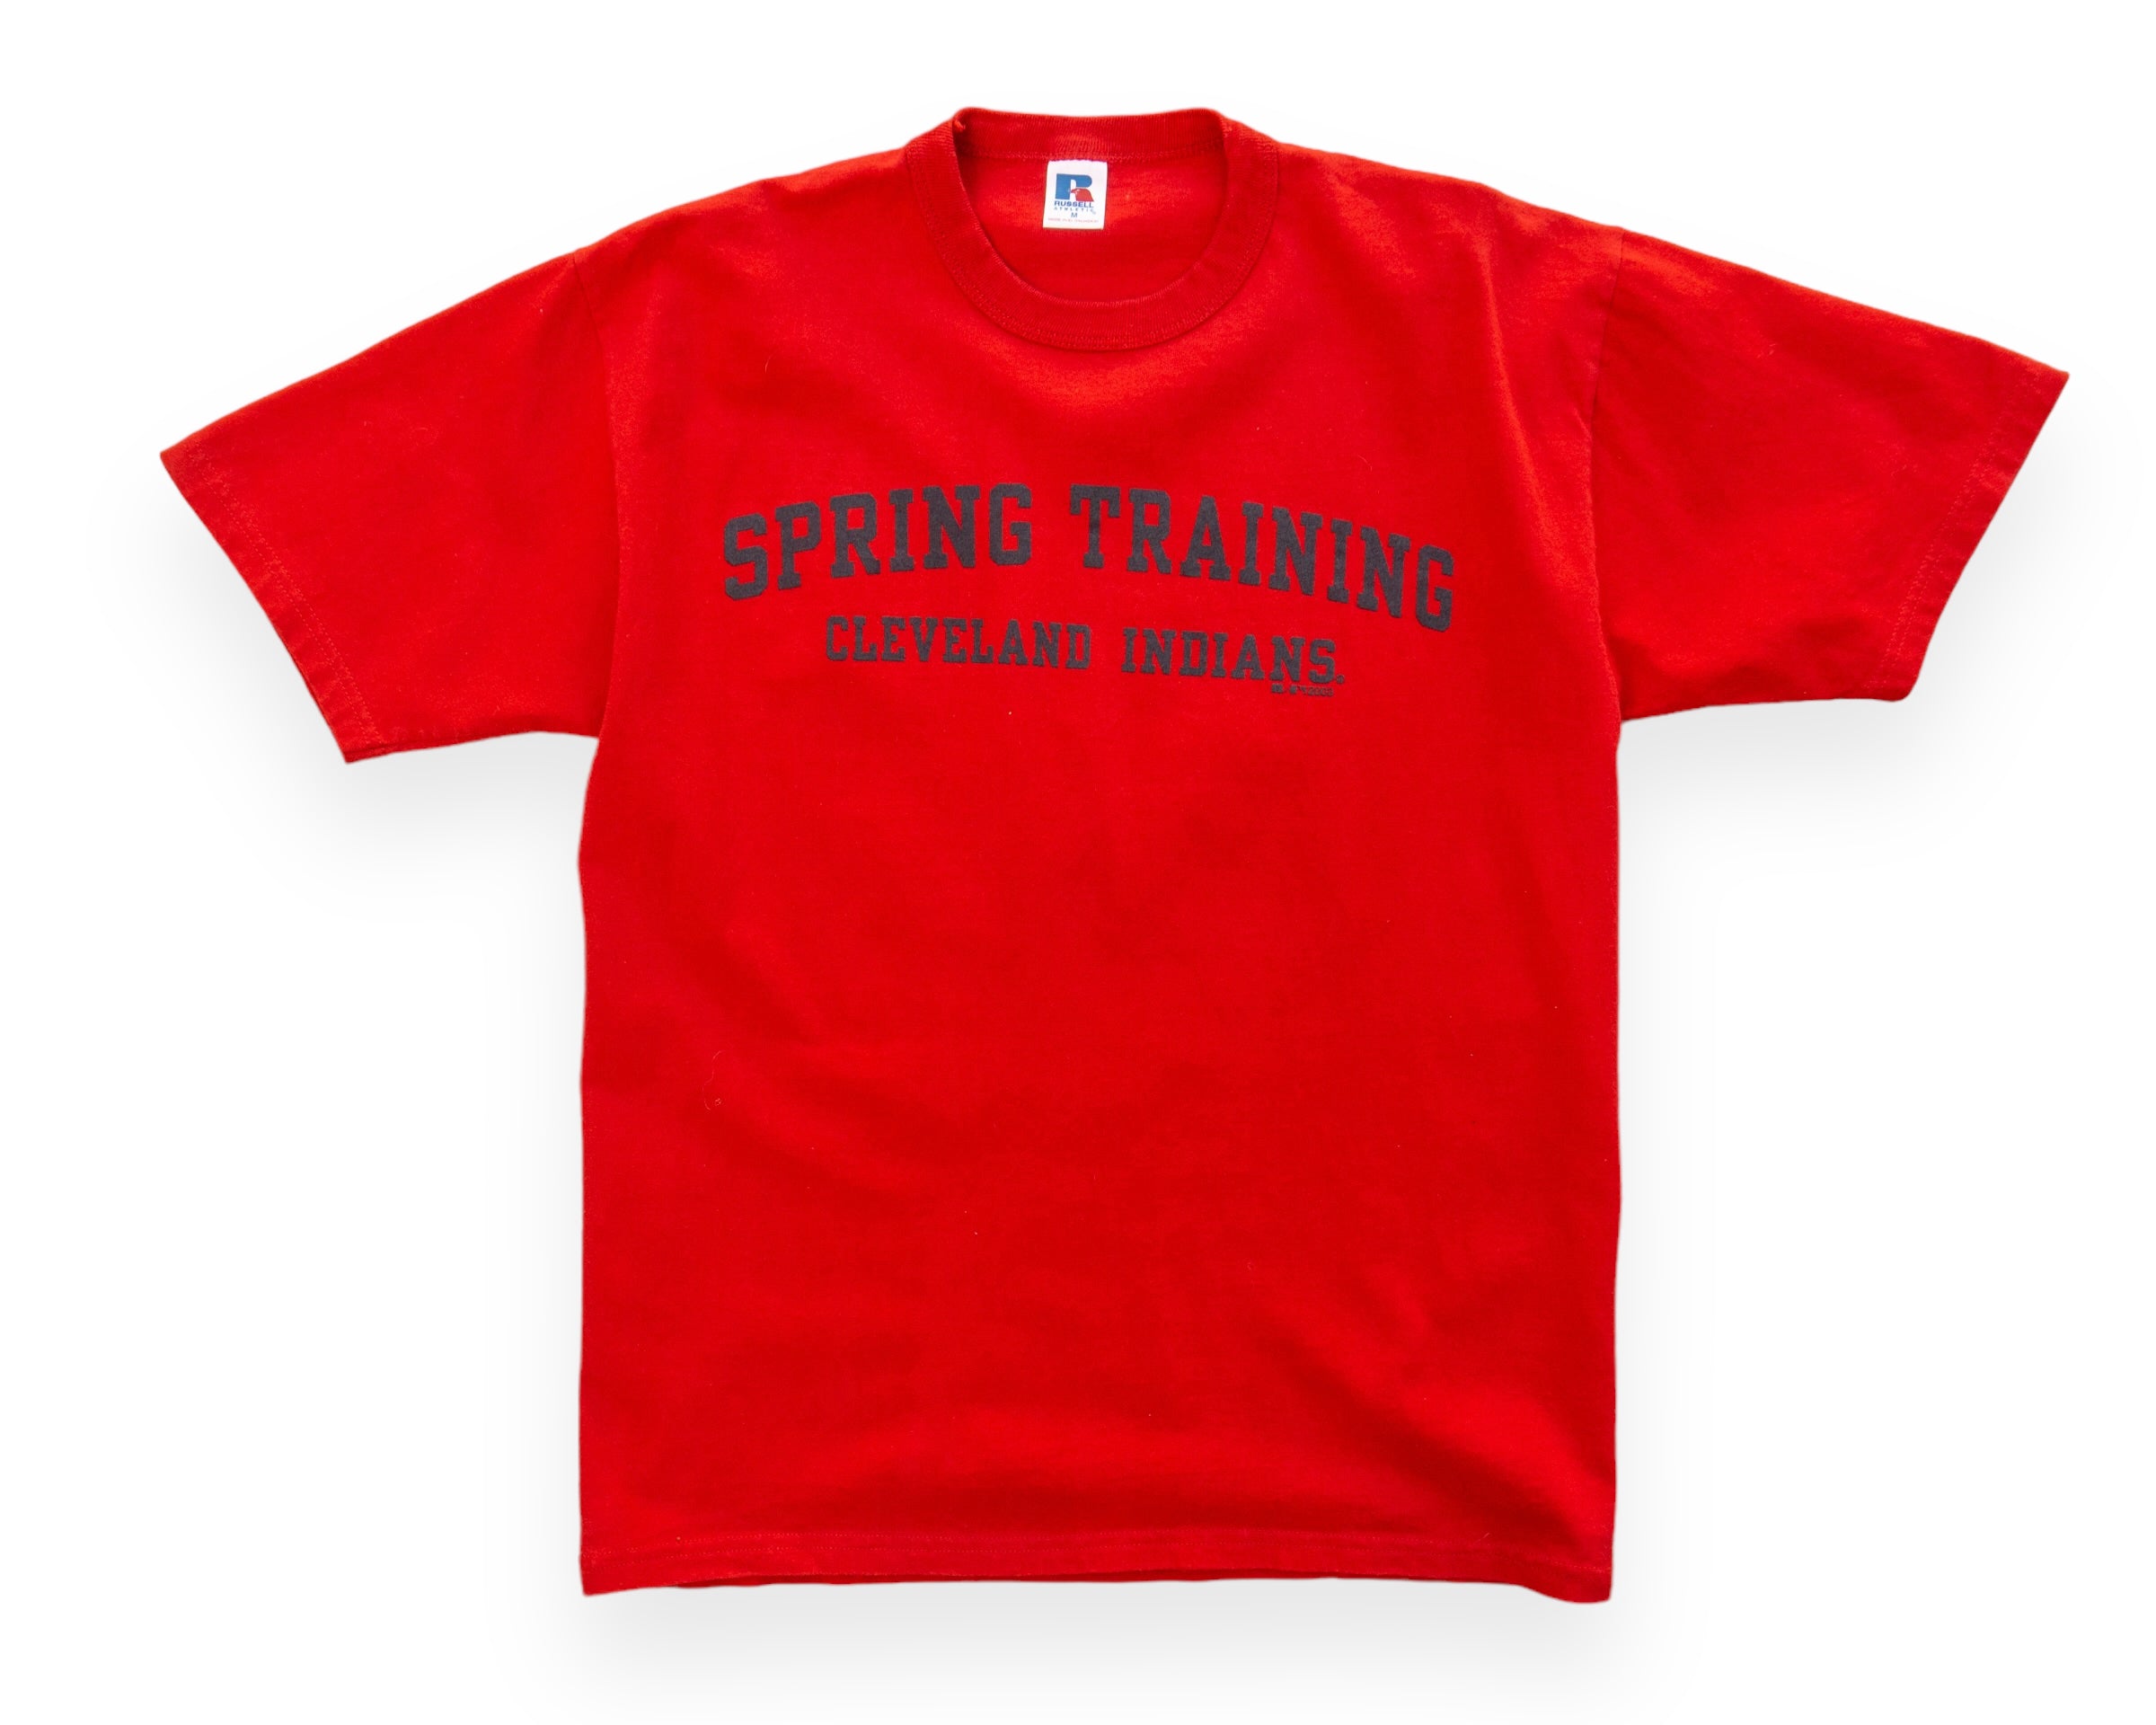 MLB Spring Training Apparel & Gear